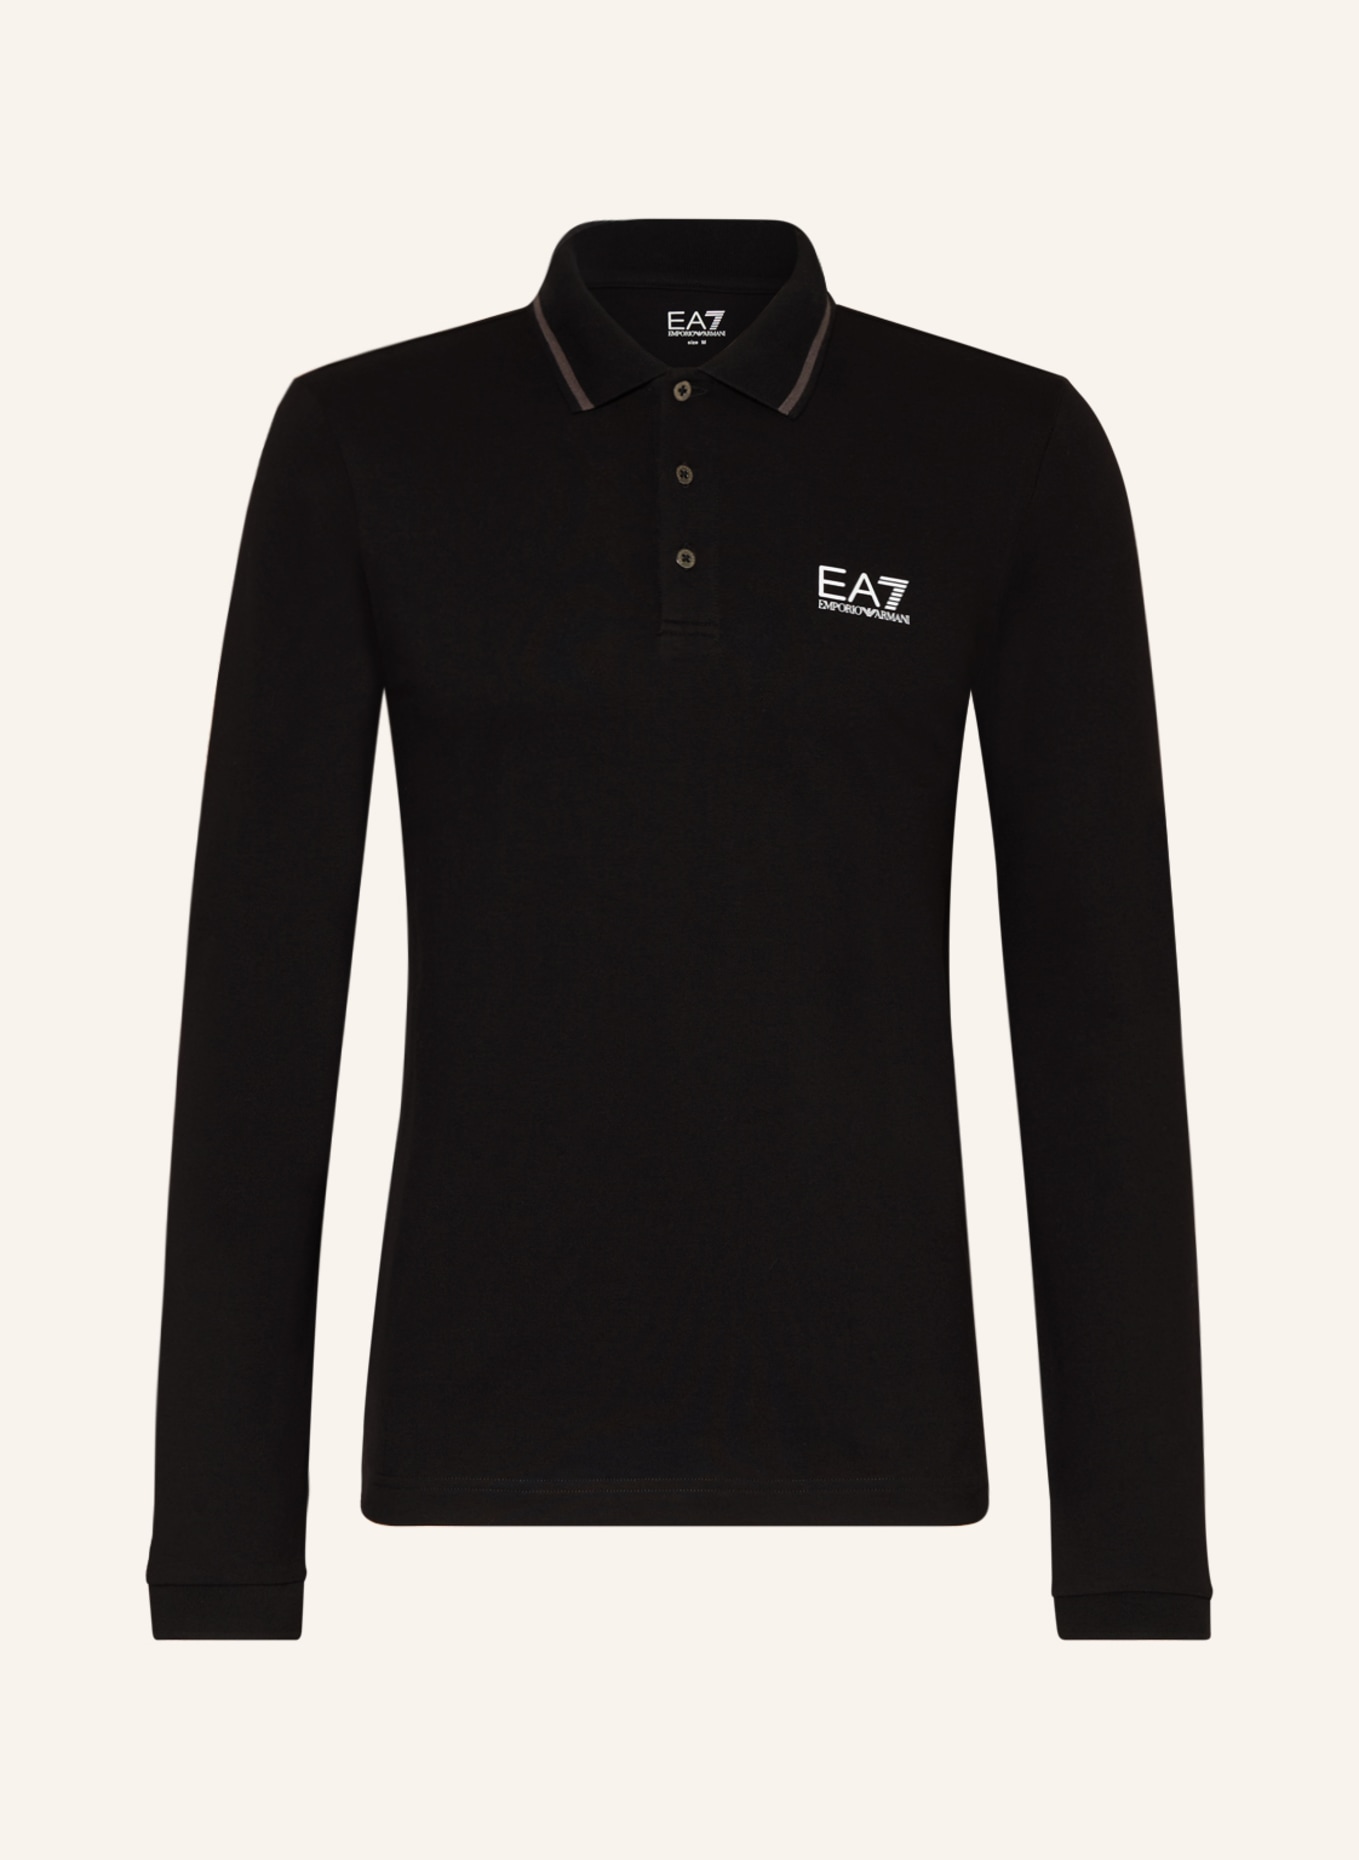 EA7 EMPORIO ARMANI Piqué-Poloshirt, Farbe: SCHWARZ (Bild 1)